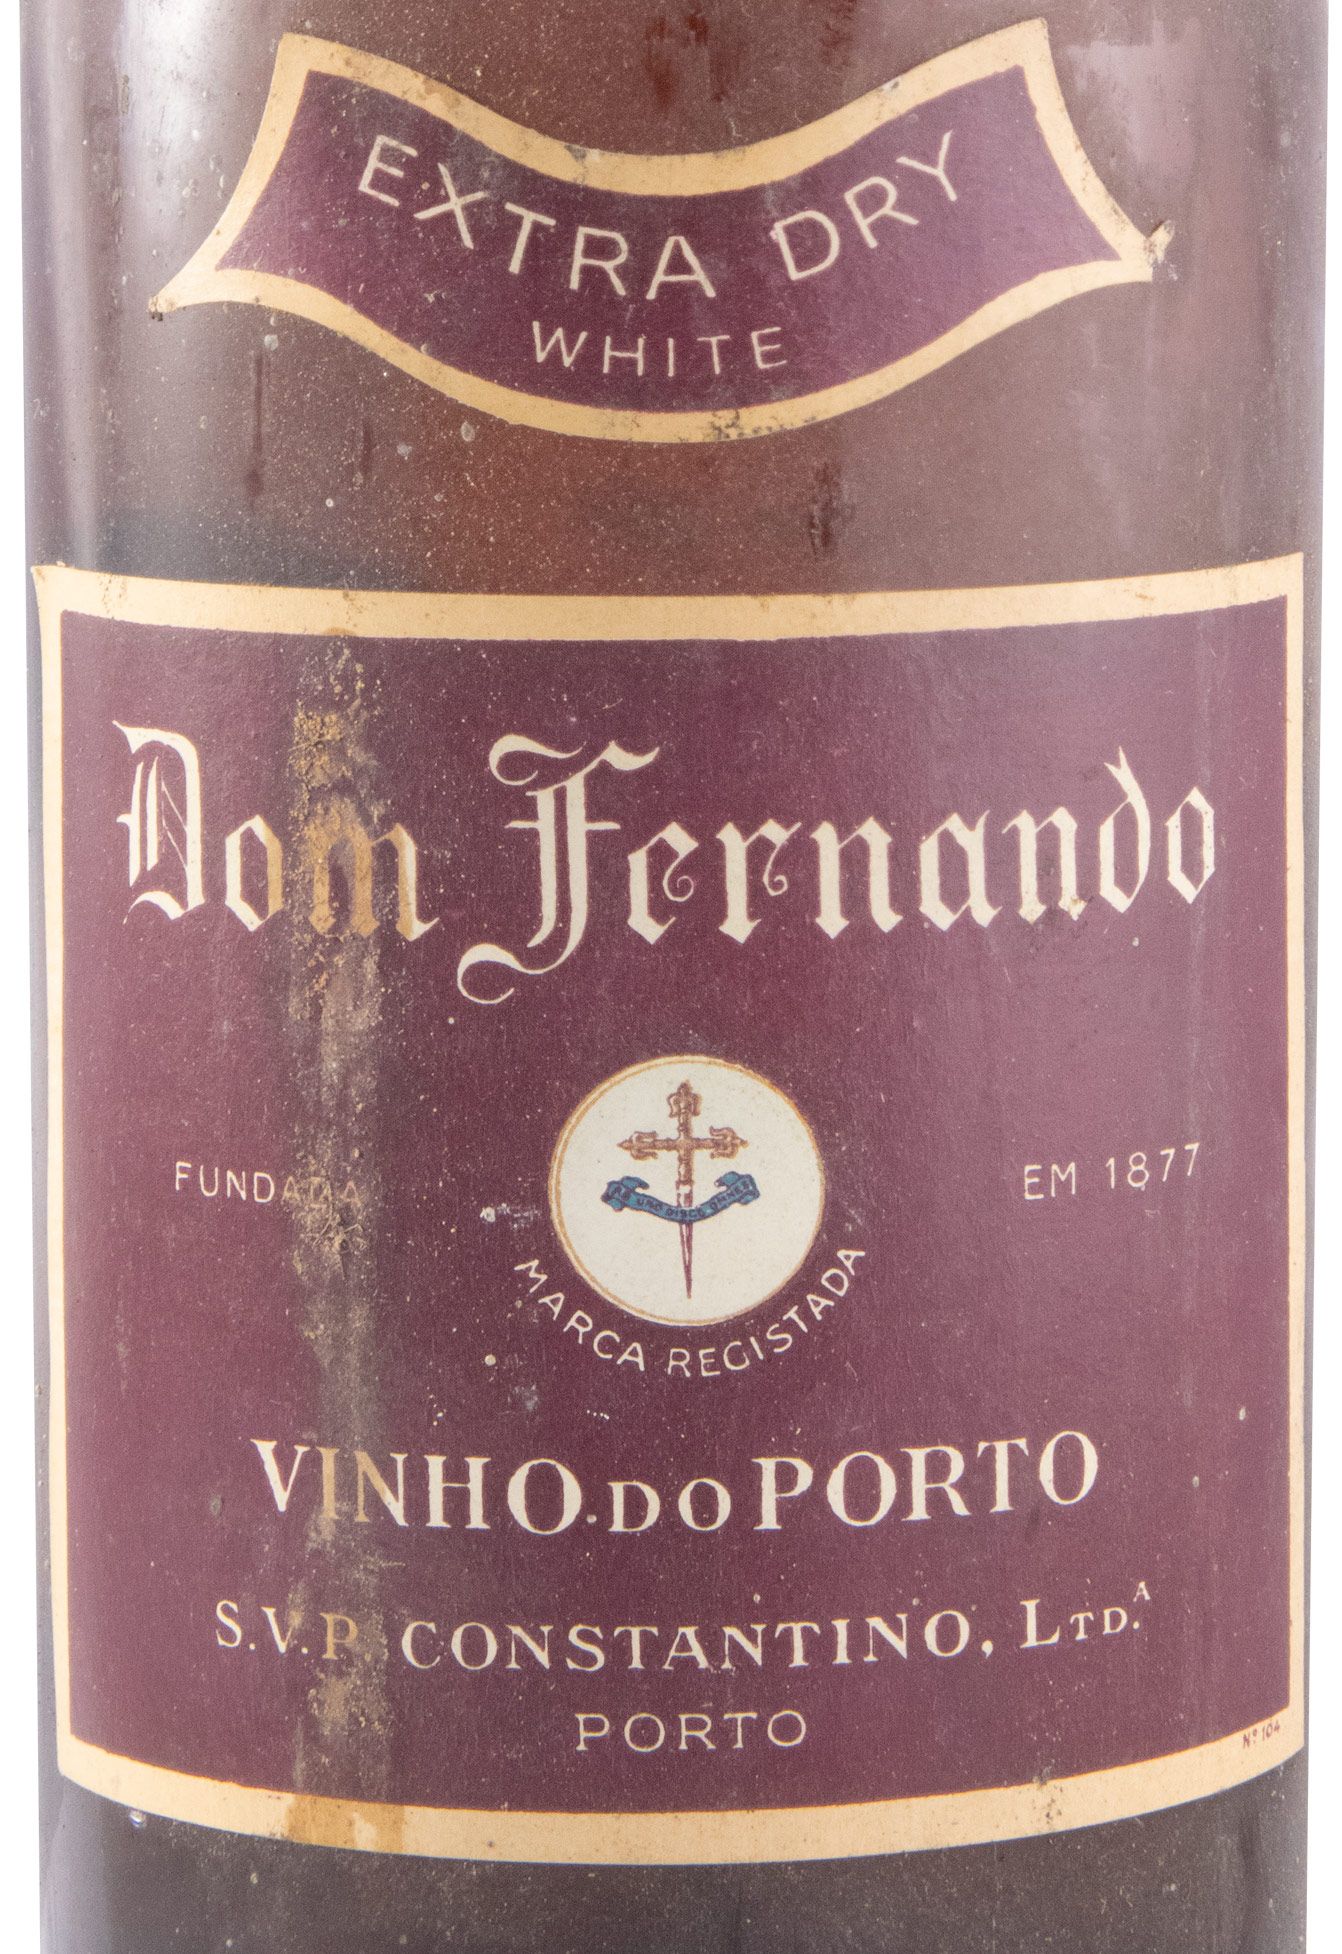 Constantino Dom Fernando Extra Dry White Port